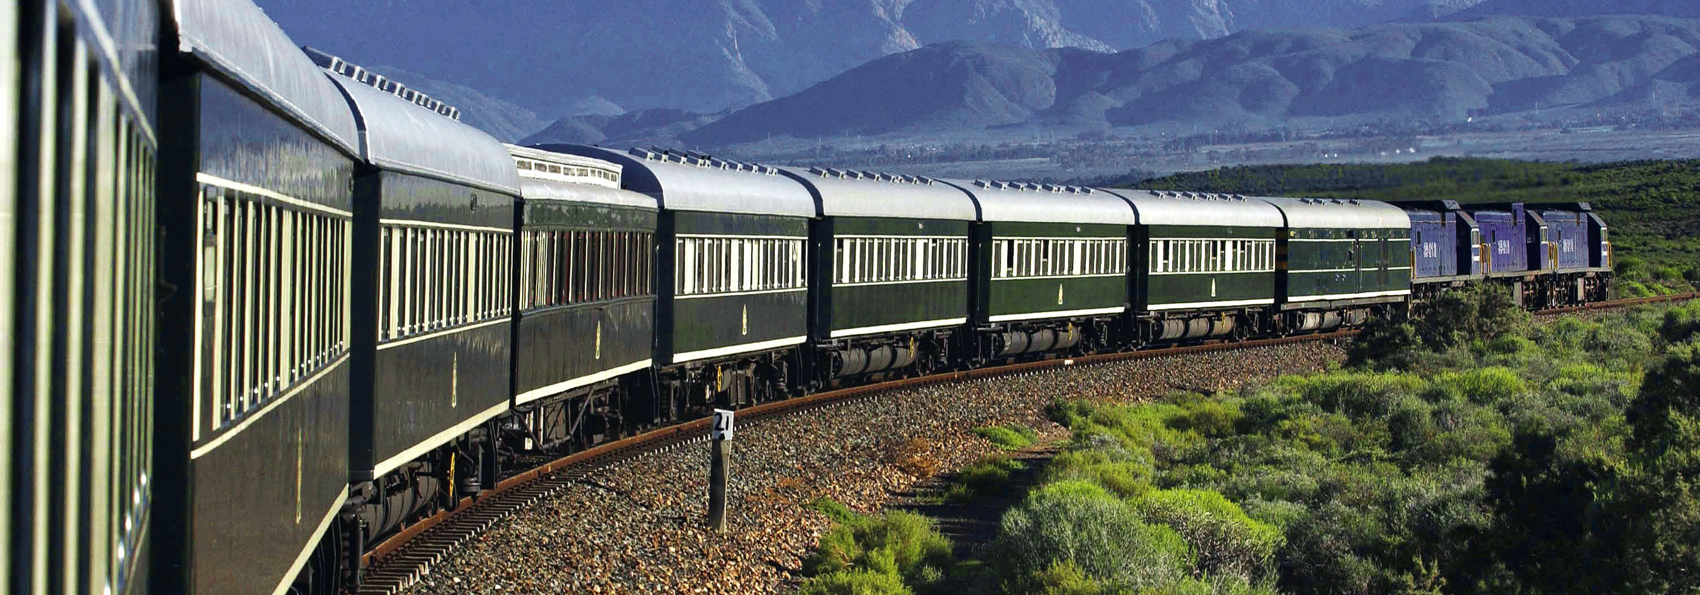 sydafrika - rovos rail_02